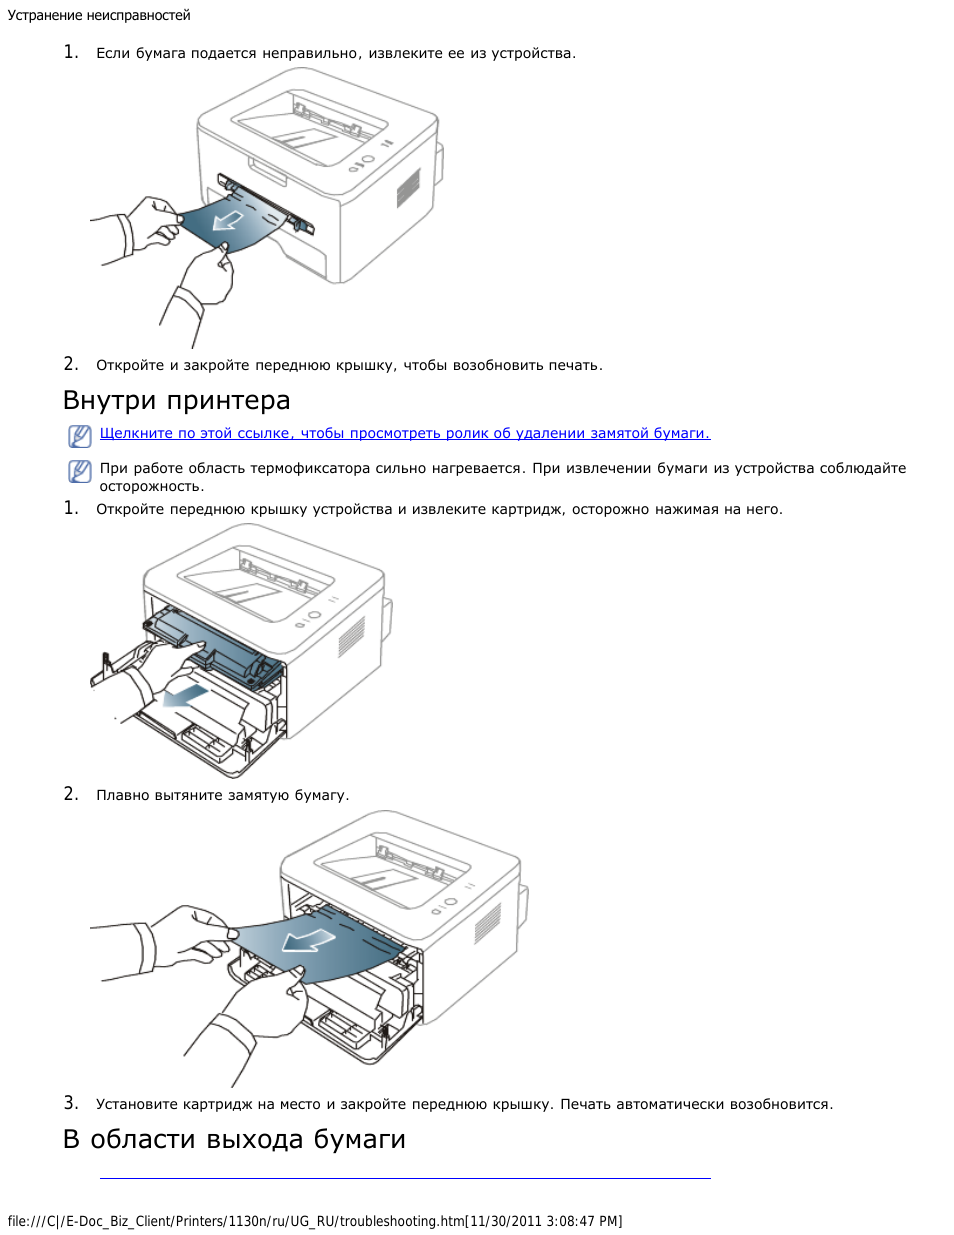 Как вставить бумагу в принтер самсунг